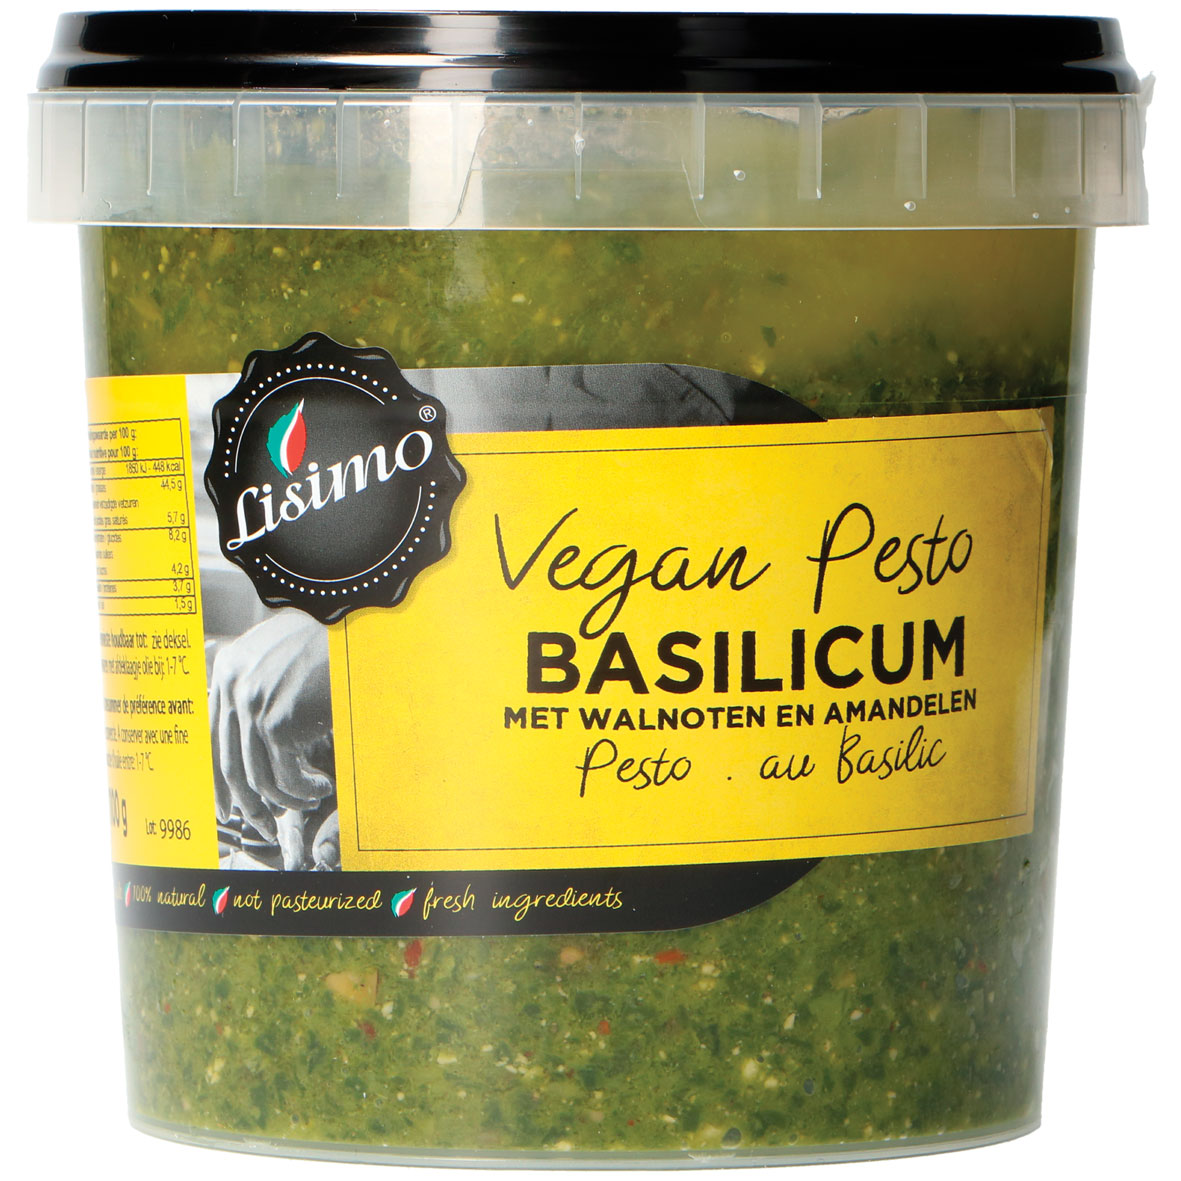 Lisimo vegan pesto basilicum